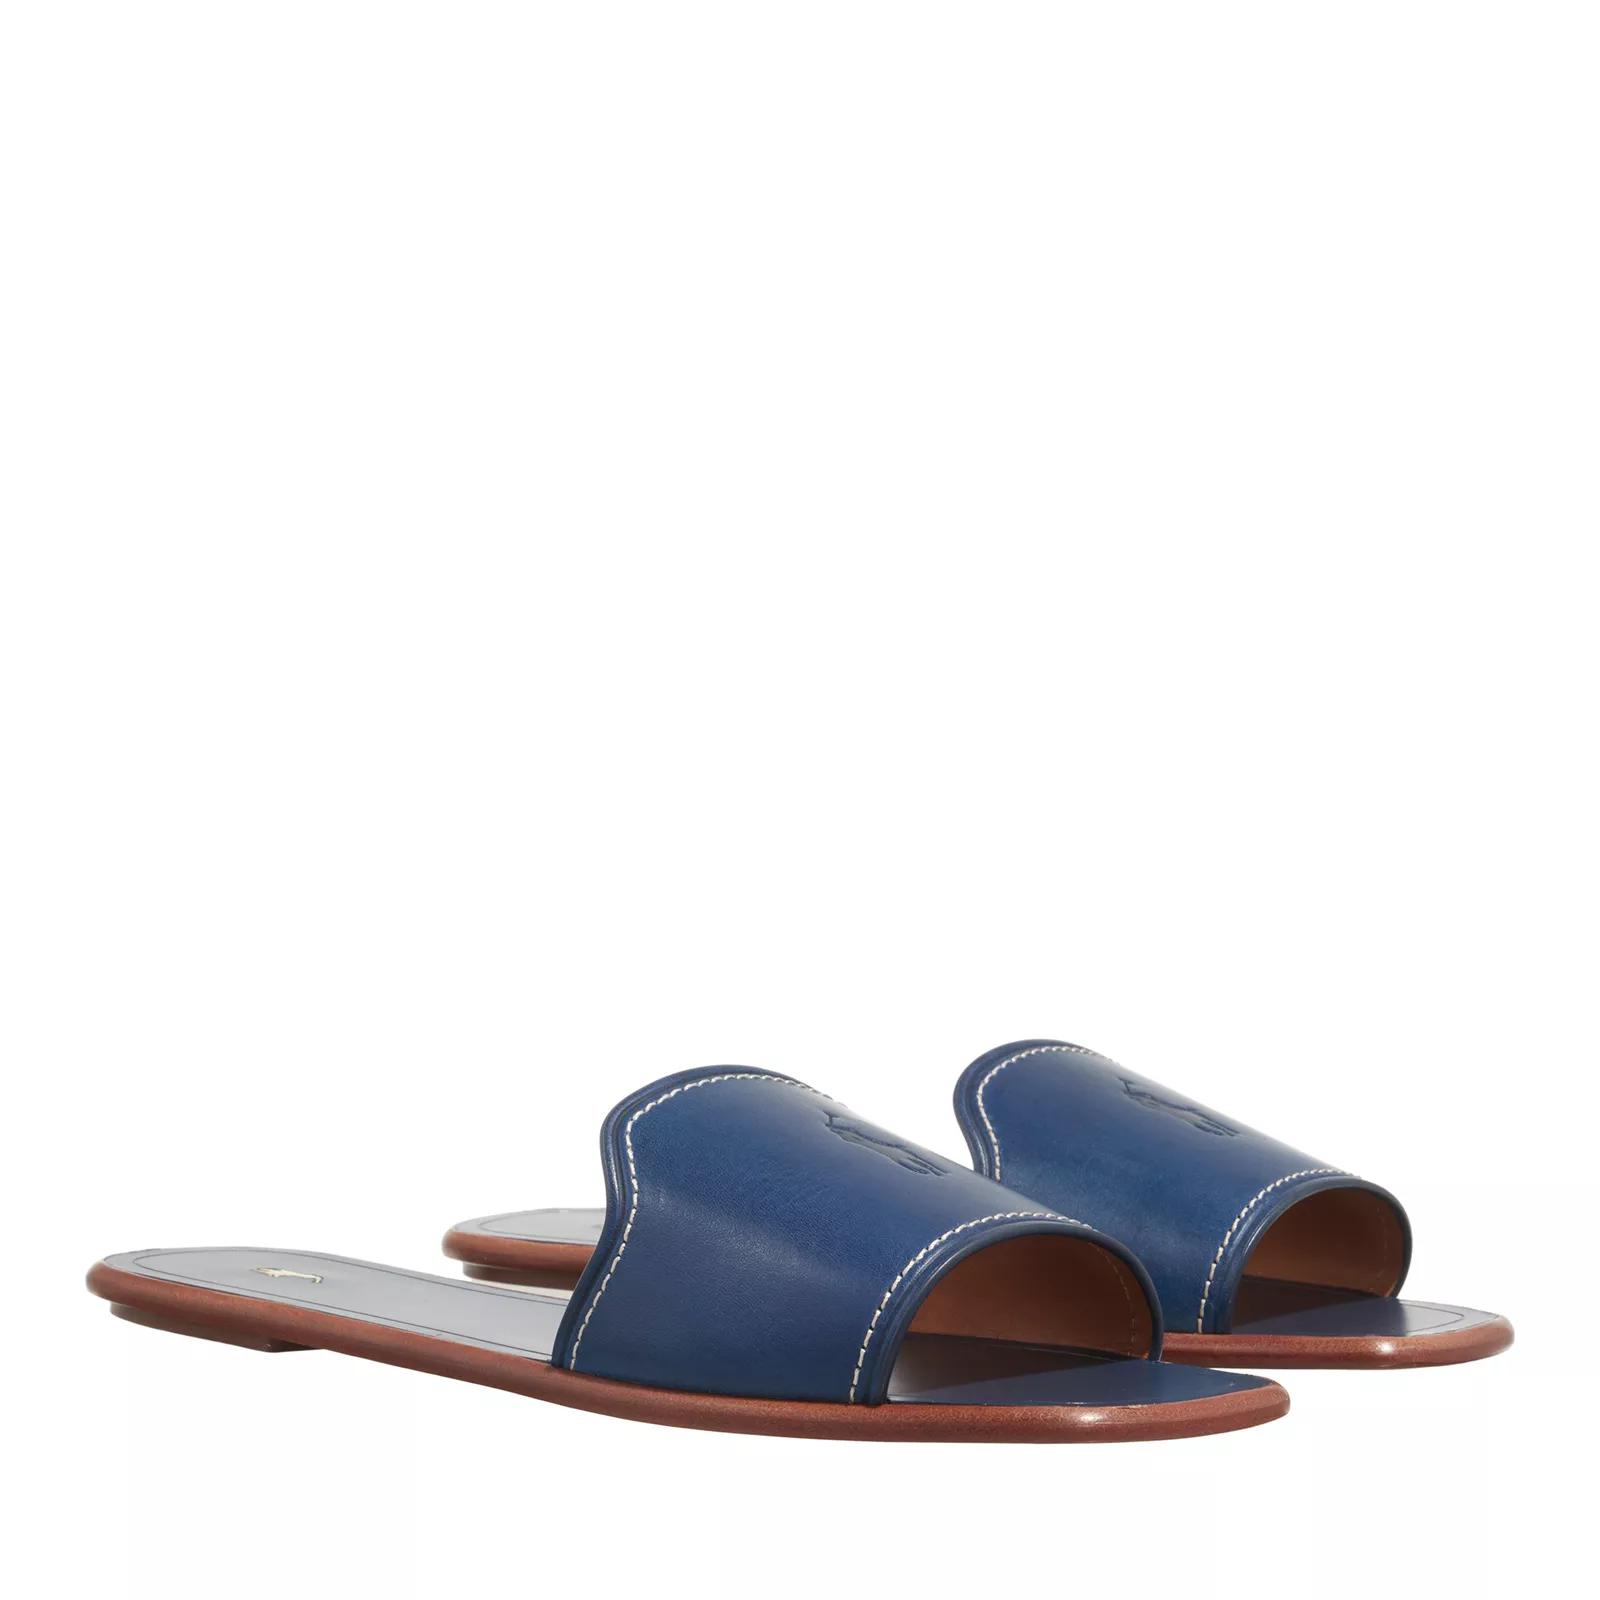 Polo Ralph Lauren Sandalen - Flat Sandals - Gr. 36 (EU) - in Blau - für Damen von Polo Ralph Lauren